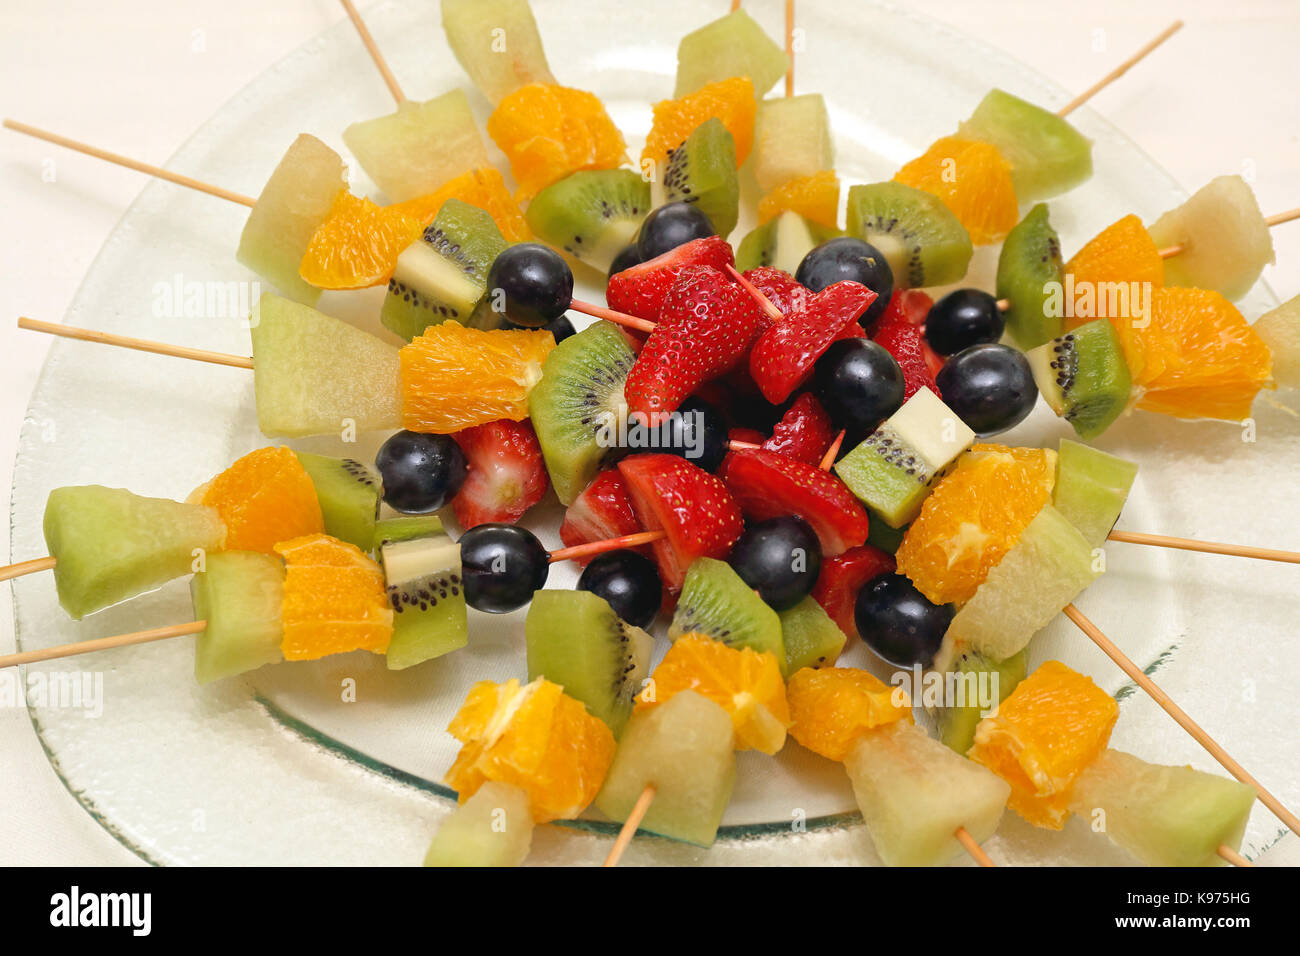 Brochettes de fruits frais sur des bâtons pour partie Photo Stock